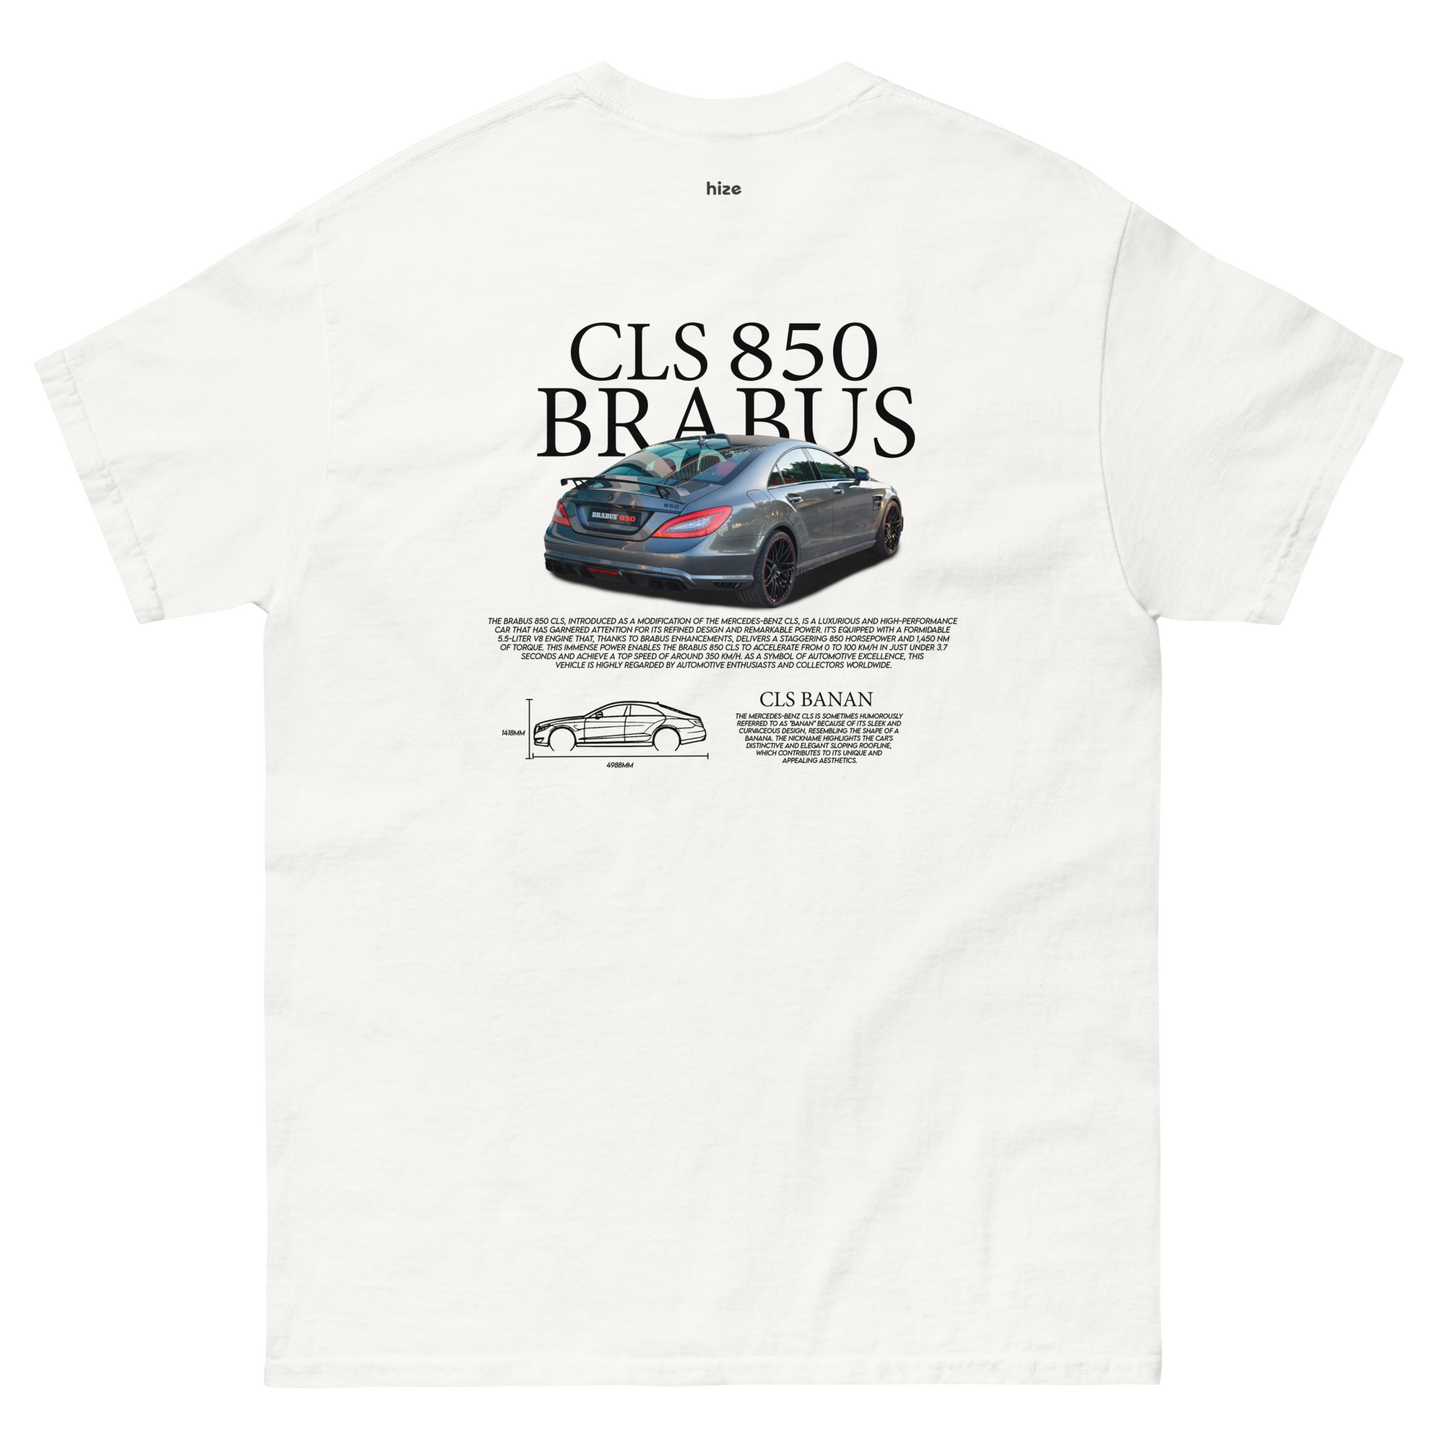 Brabus CLS 850 T-shirt